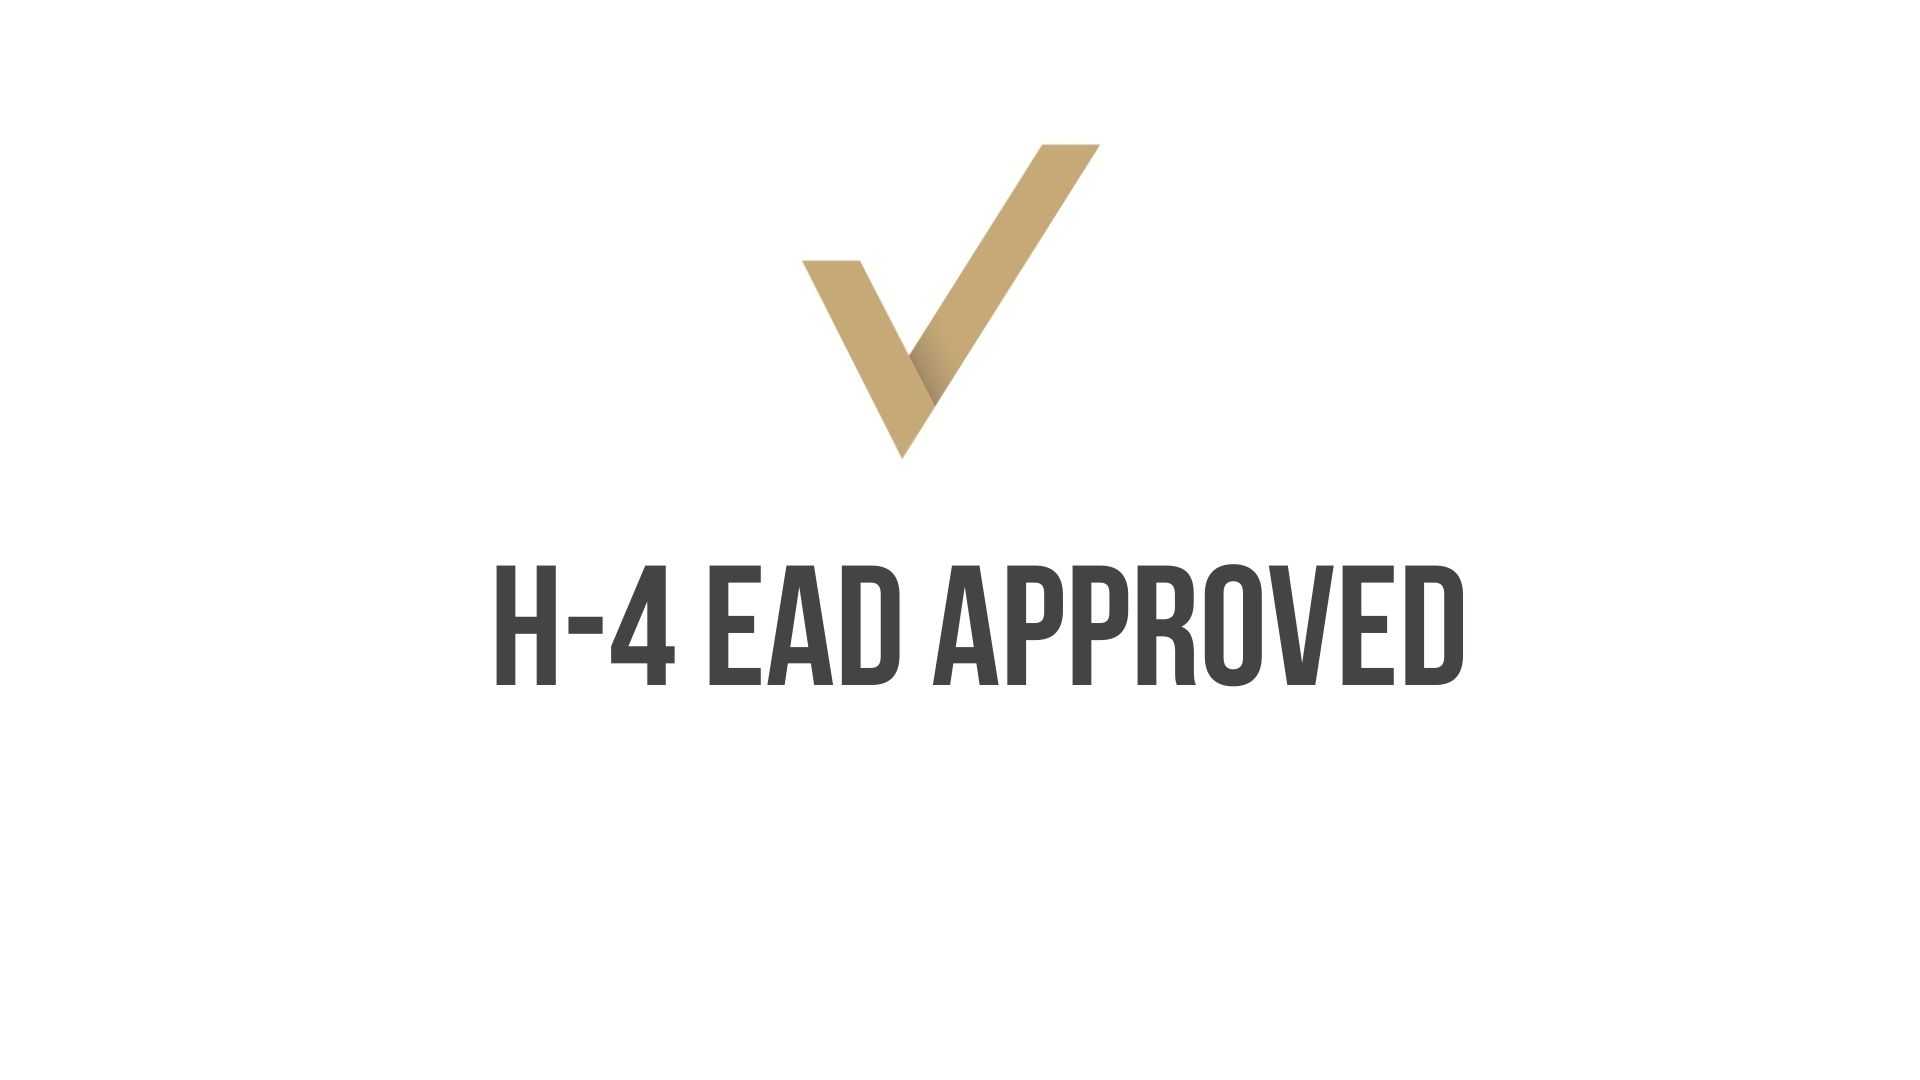 EAD Approval for H-4 Visa Holder